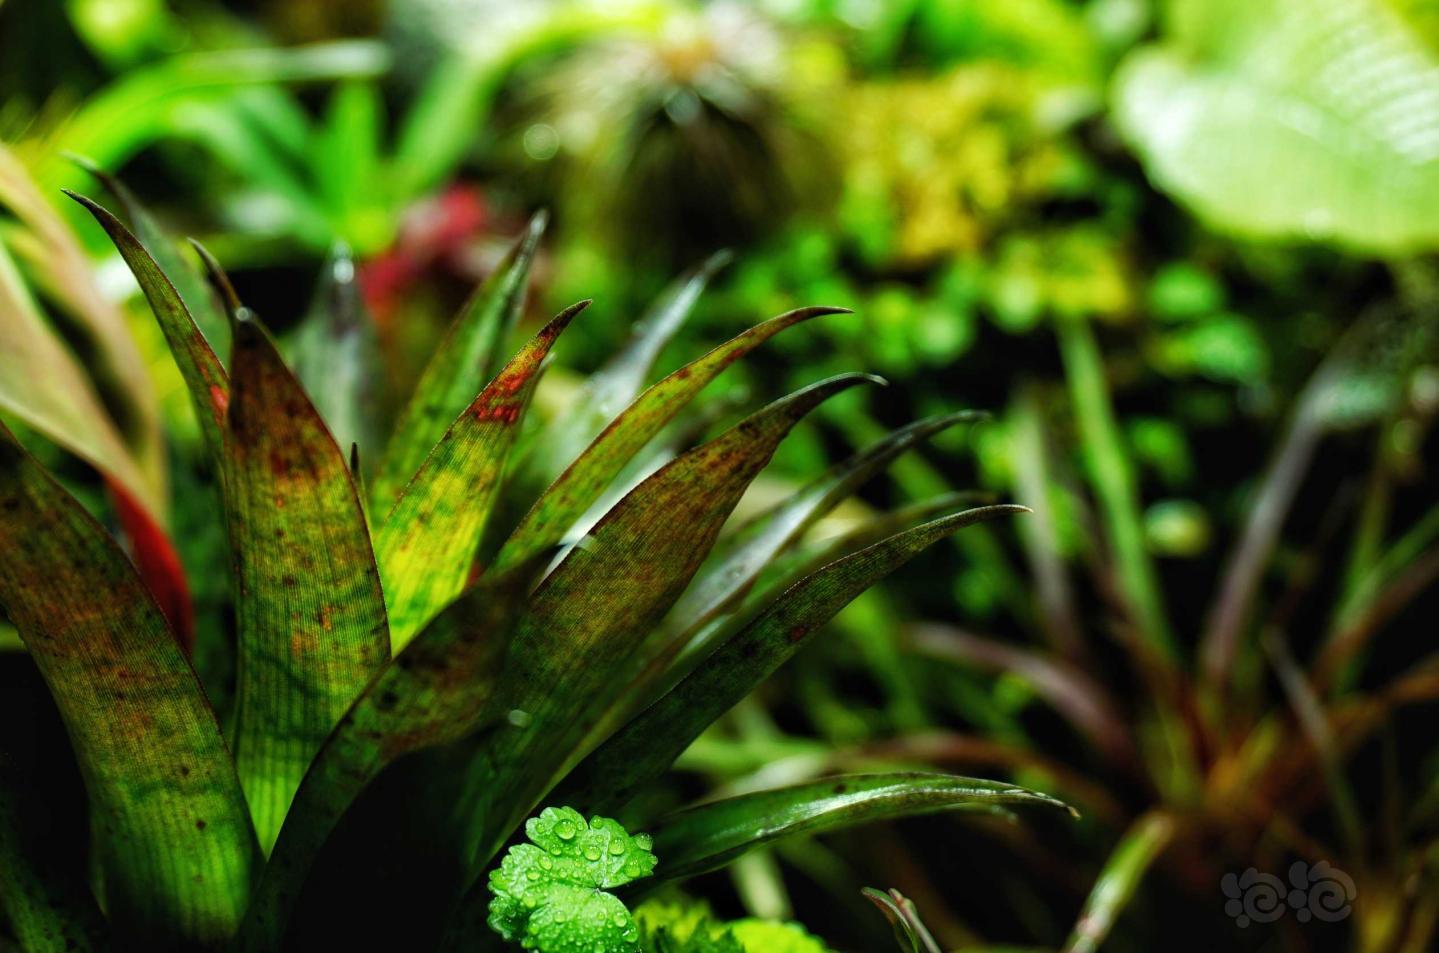 【雨林】更新一些我的雨林小缸内植物的照片-图8